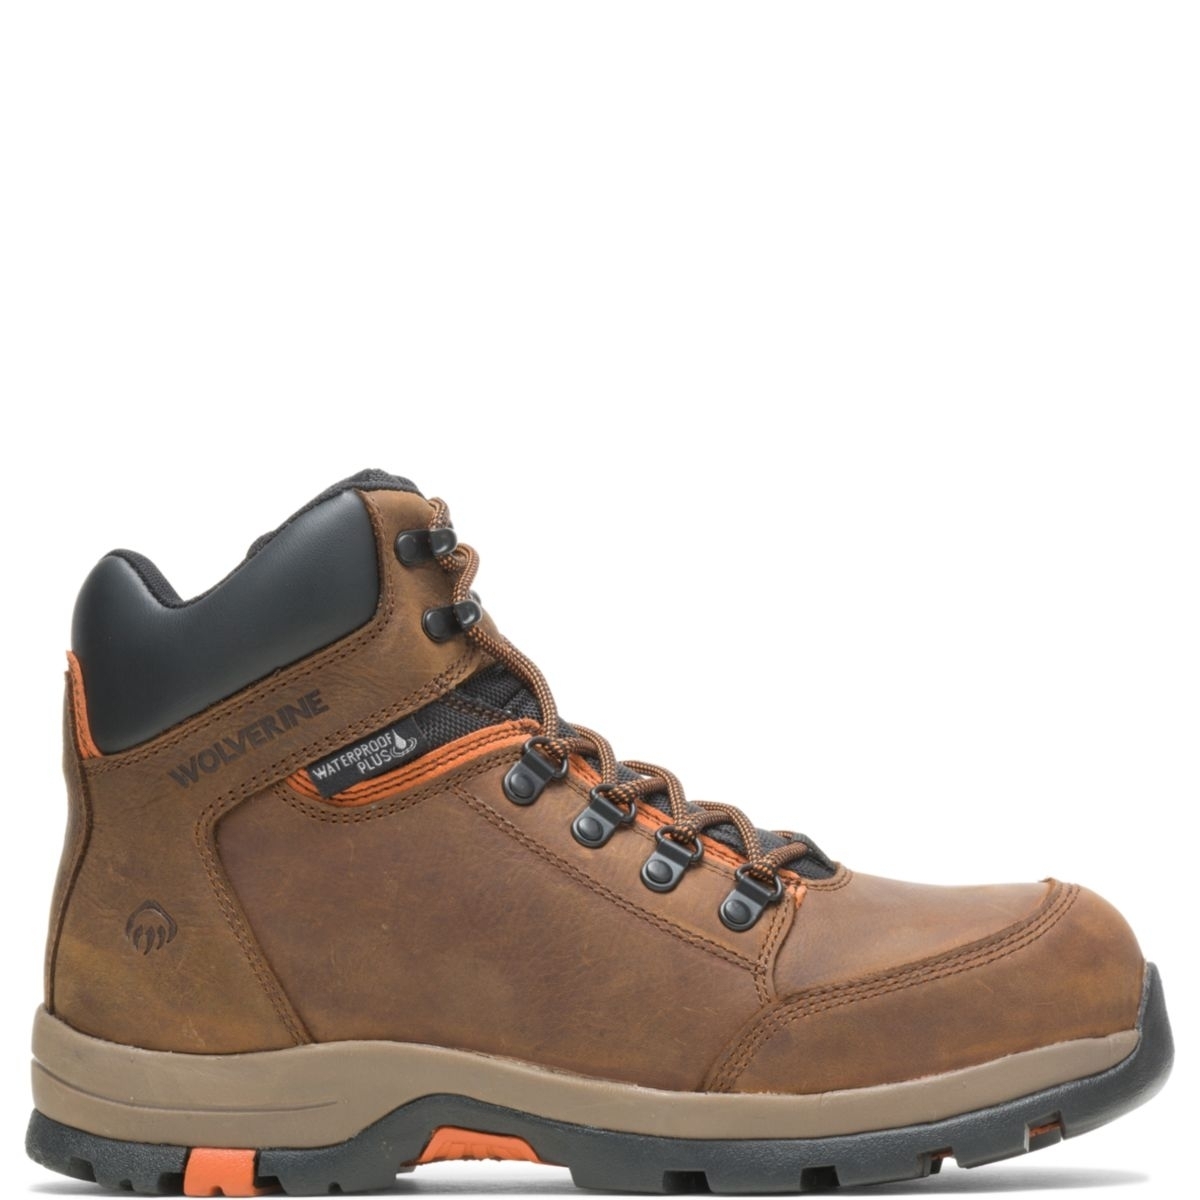 WOLVERINE Men's Grayson Steel Toe Waterproof Work Boot Brown - W211043 BROWN - BROWN, 9 X-Wide